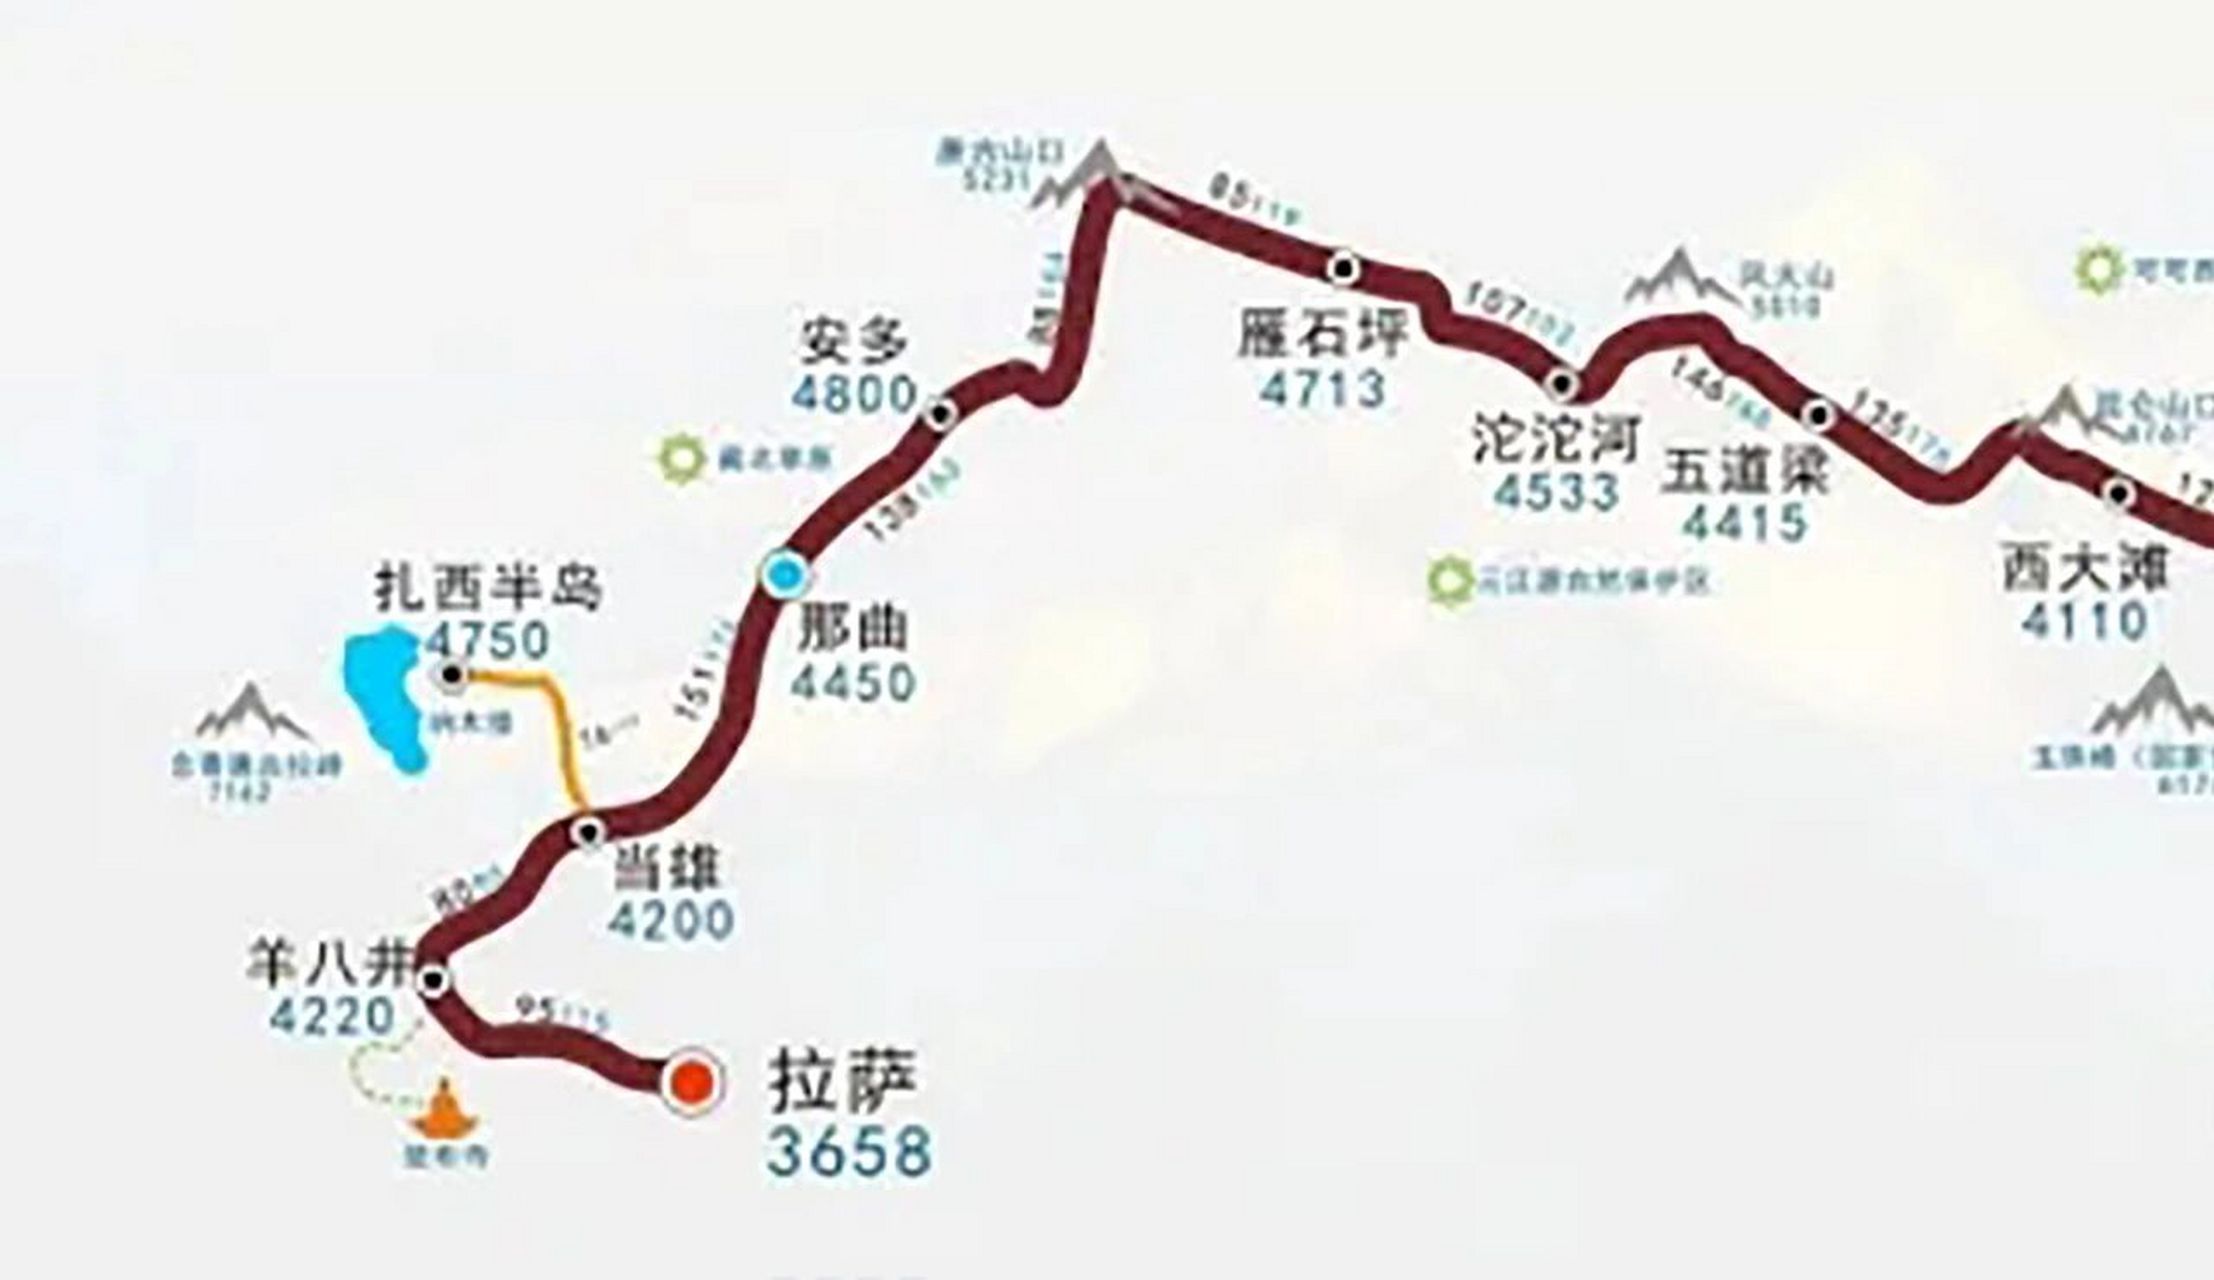 【进藏路线】青藏线 青藏线,即国道g109,是从西宁到拉萨的进藏路线